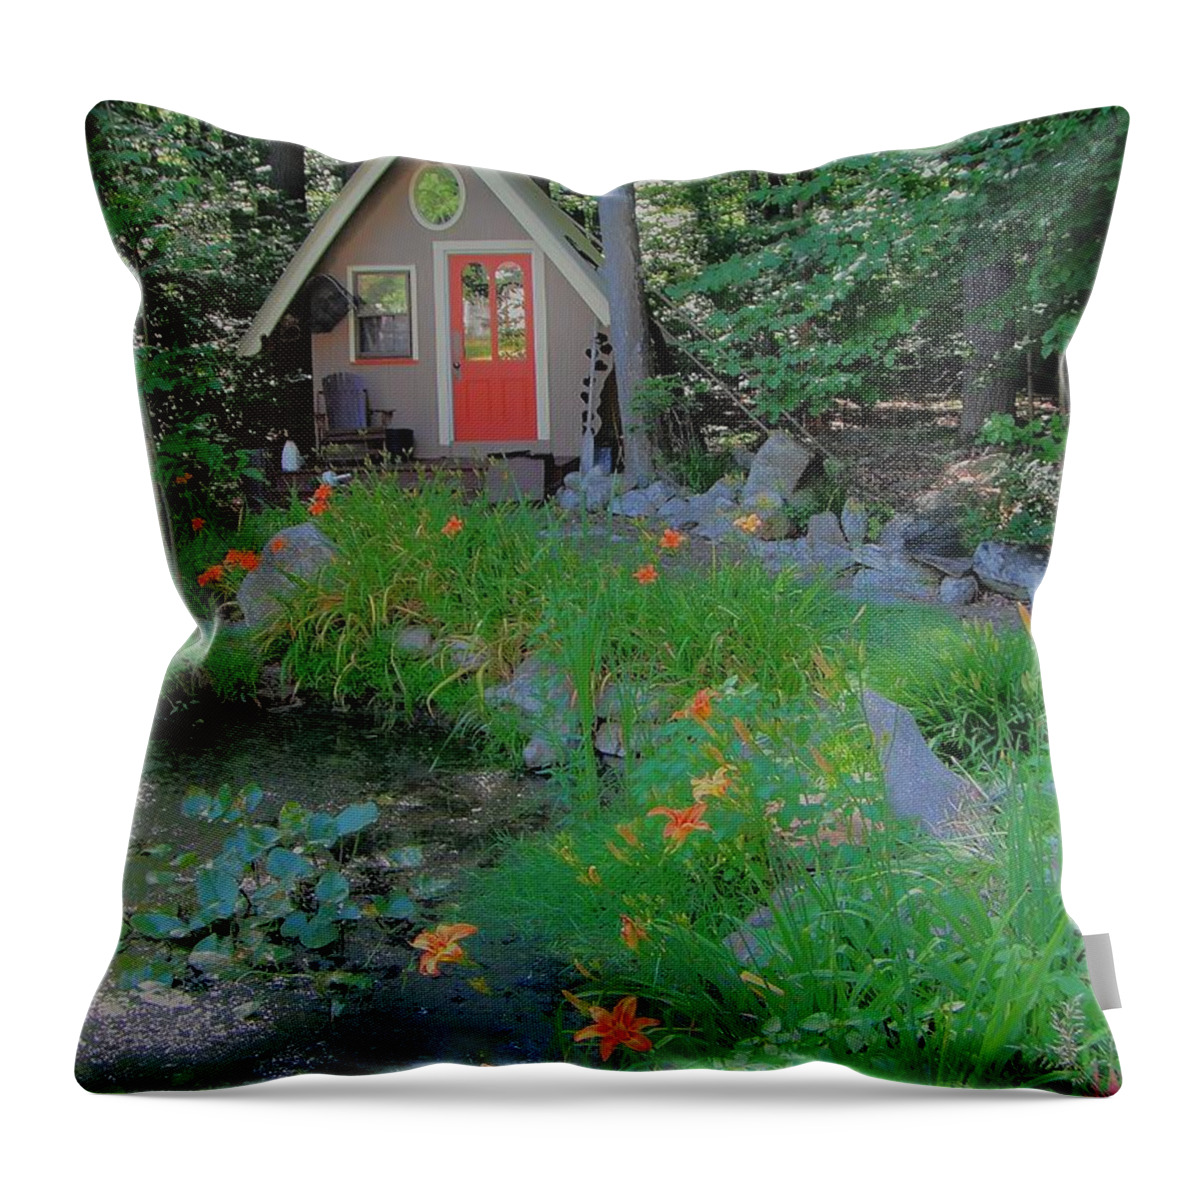 Garden Throw Pillow featuring the photograph Magic Garden by Susan Carella